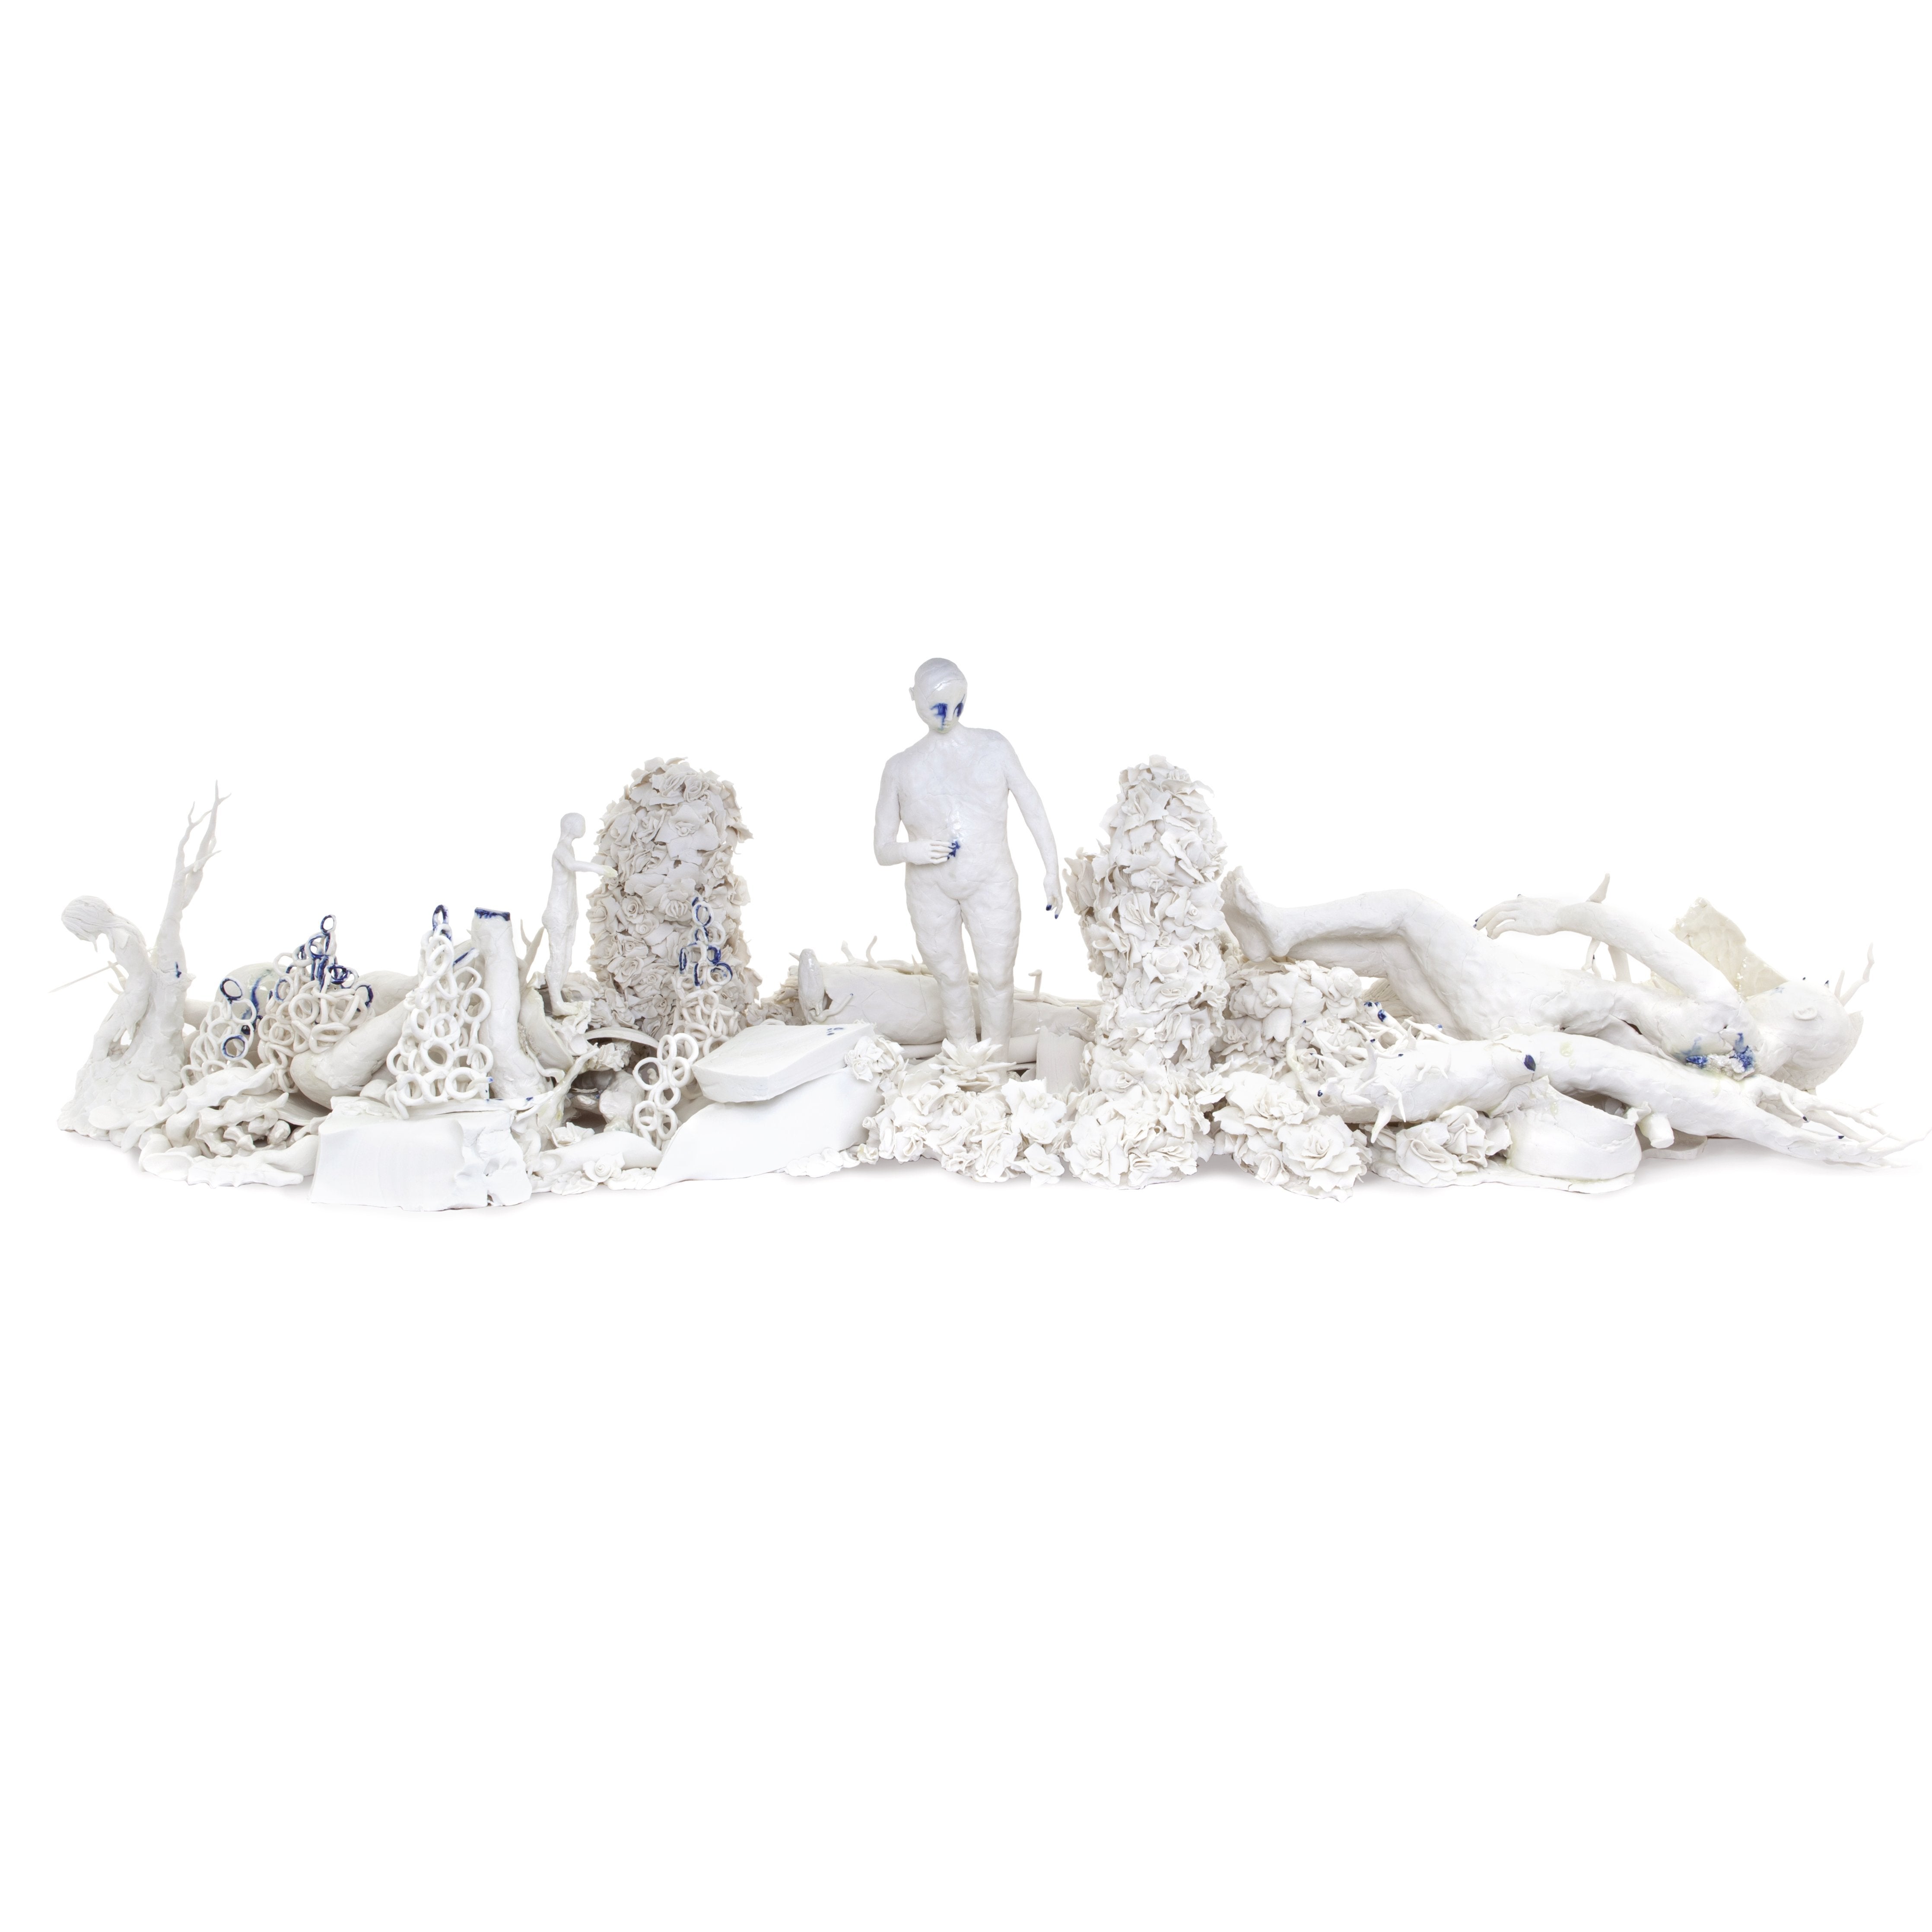 Claire Curneen,Baroque and Berserk, Porcelain sculpture - ONEROOM